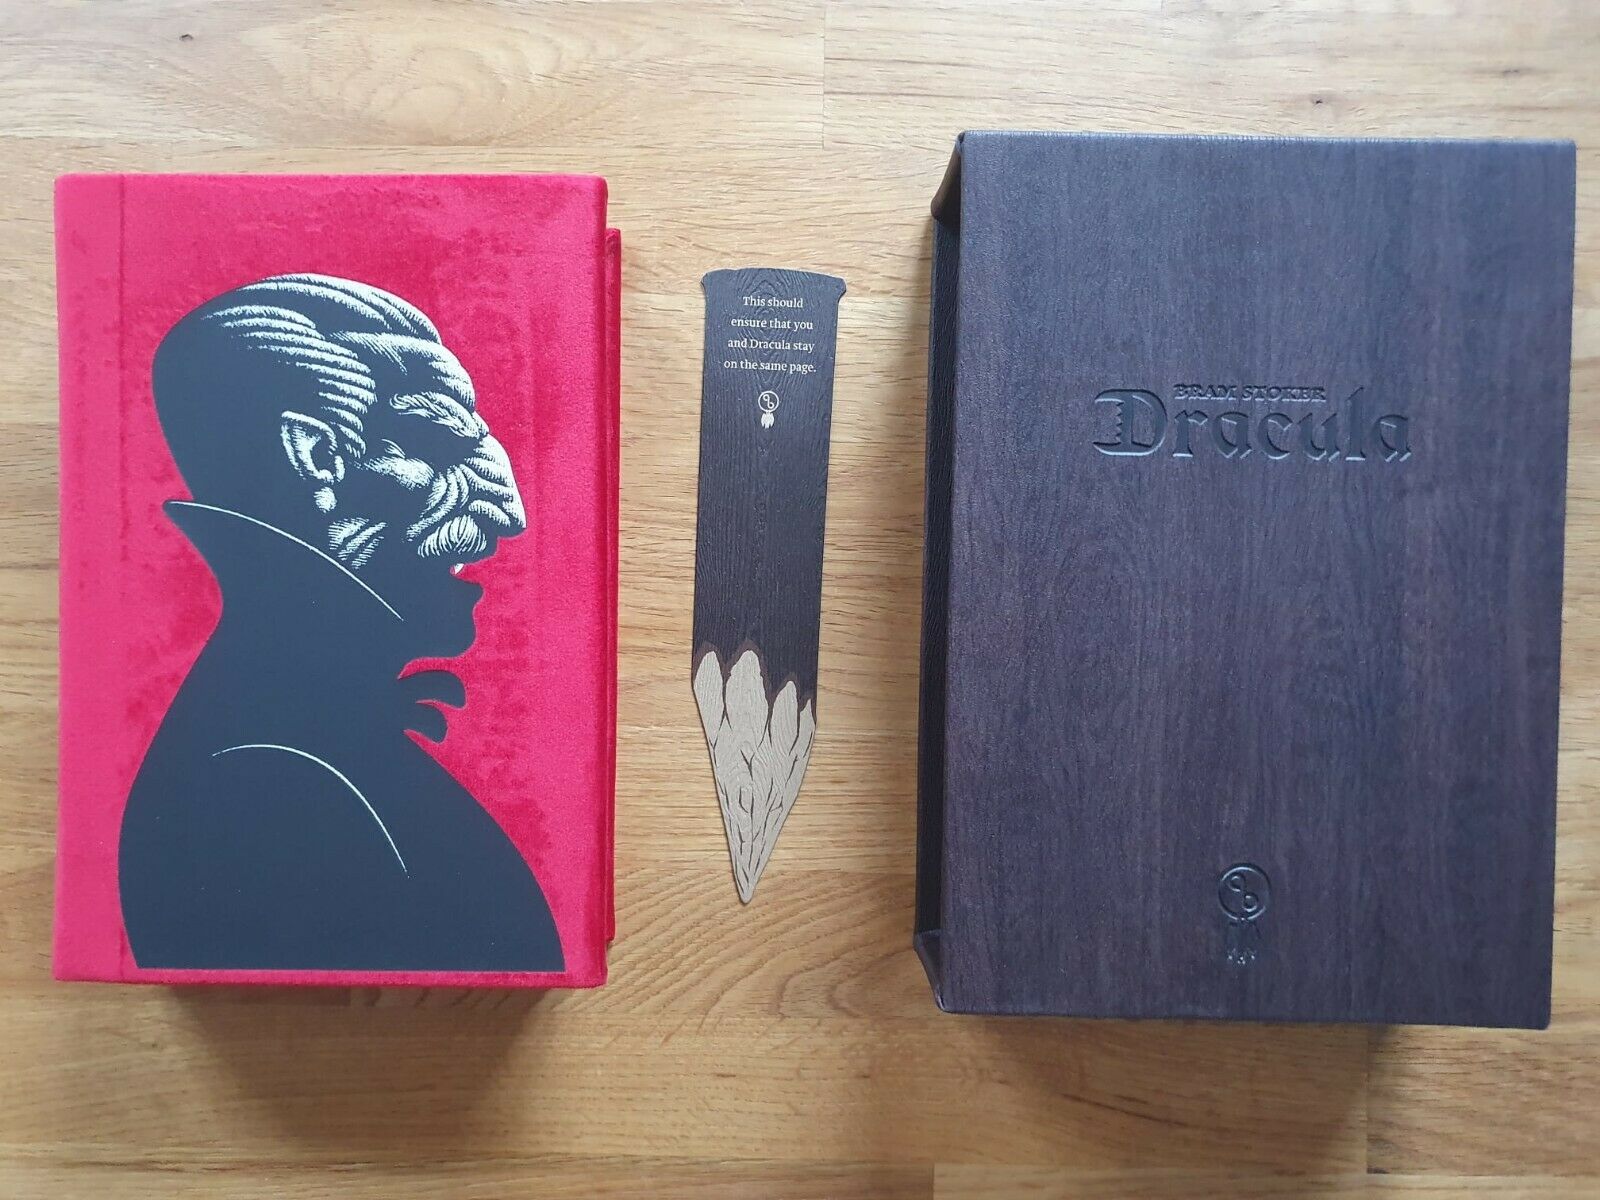 Un’eccezionale edizione moderna di “Dracula” di Bram Stoker stampata in Croazia